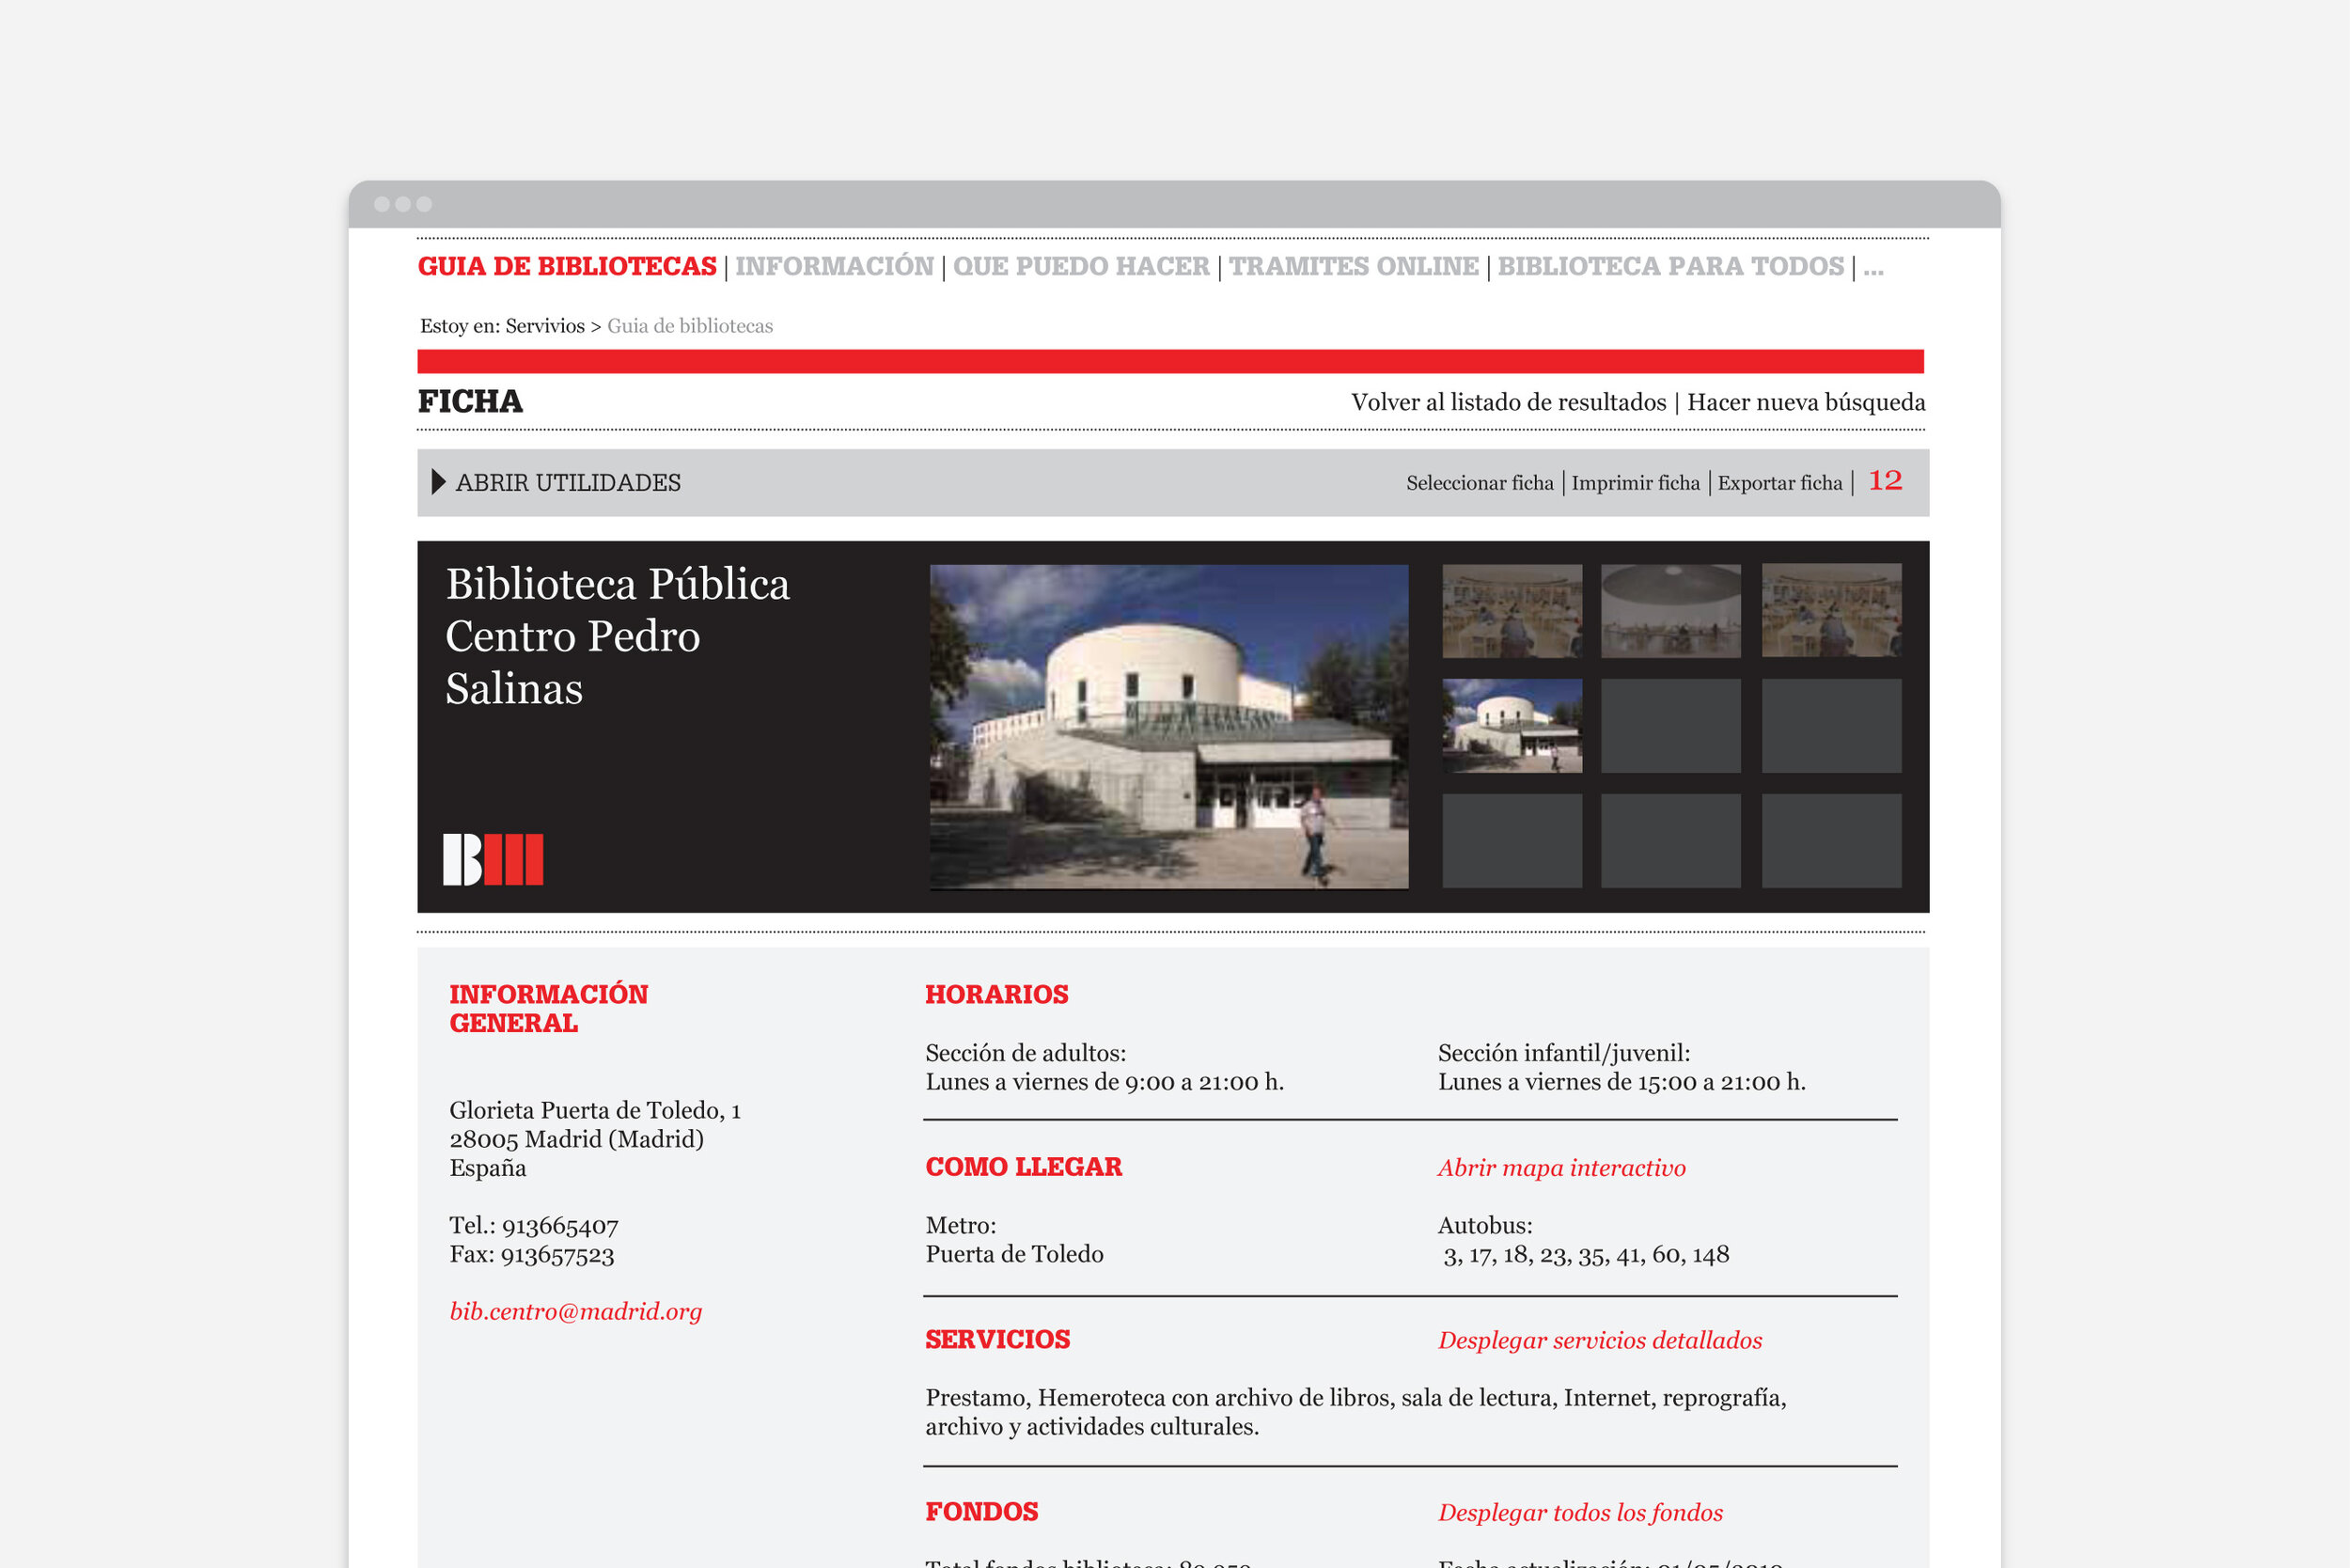 Proyecto - Bibliotecas de Madrid - website V01-26.jpg